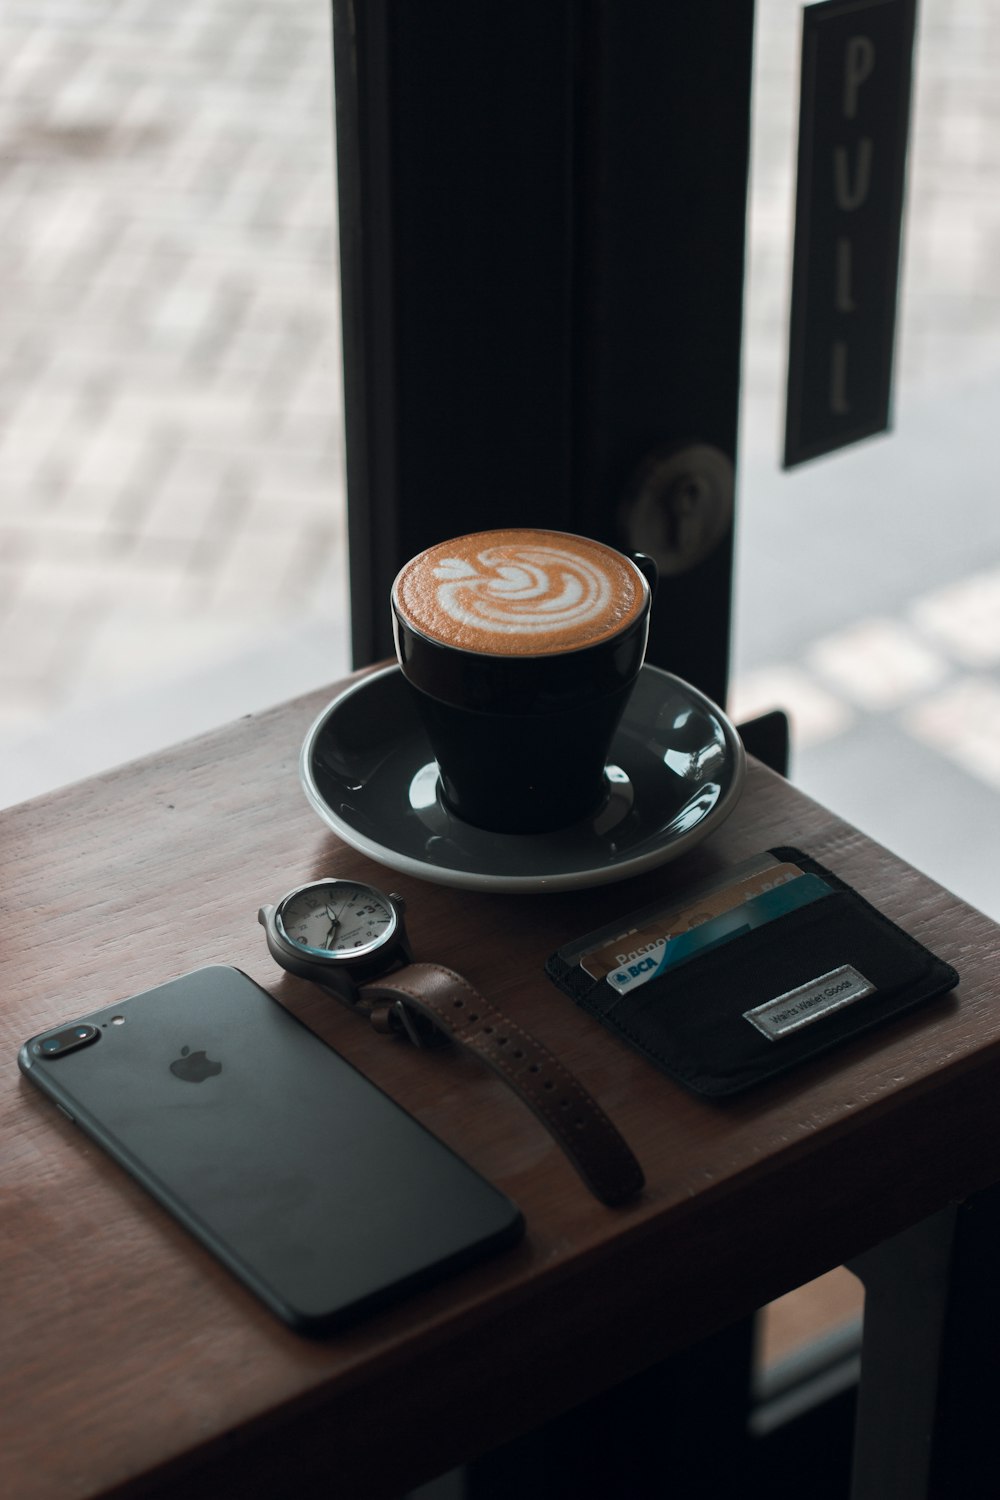 schwarze Keramik-Teetasse mit Kaffee-Latte auf Untertasse neben schwarzem iPhone 7 Plus auf braunem Holztisch